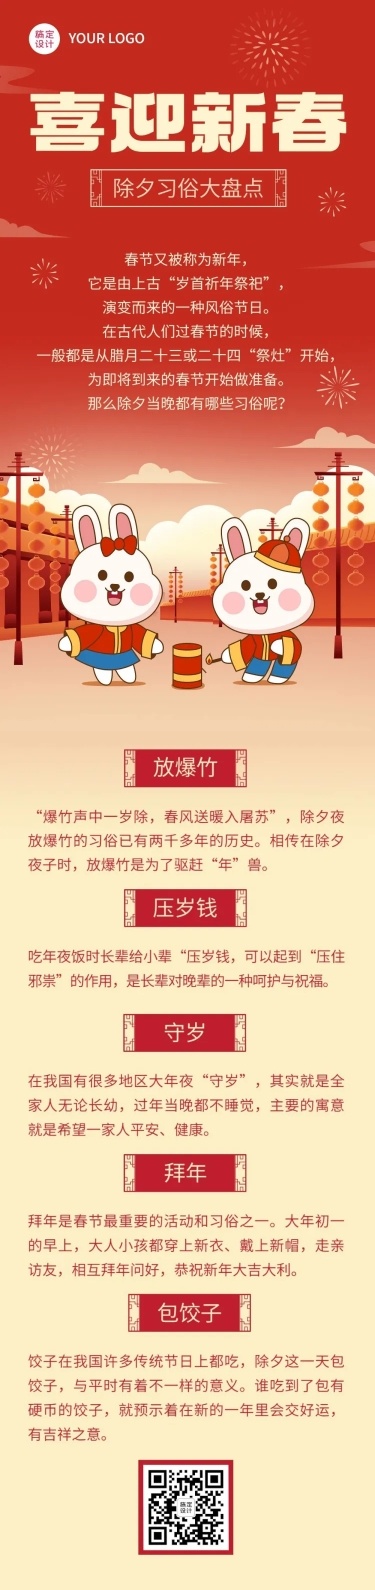 春节除夕节日习俗科普文章长图